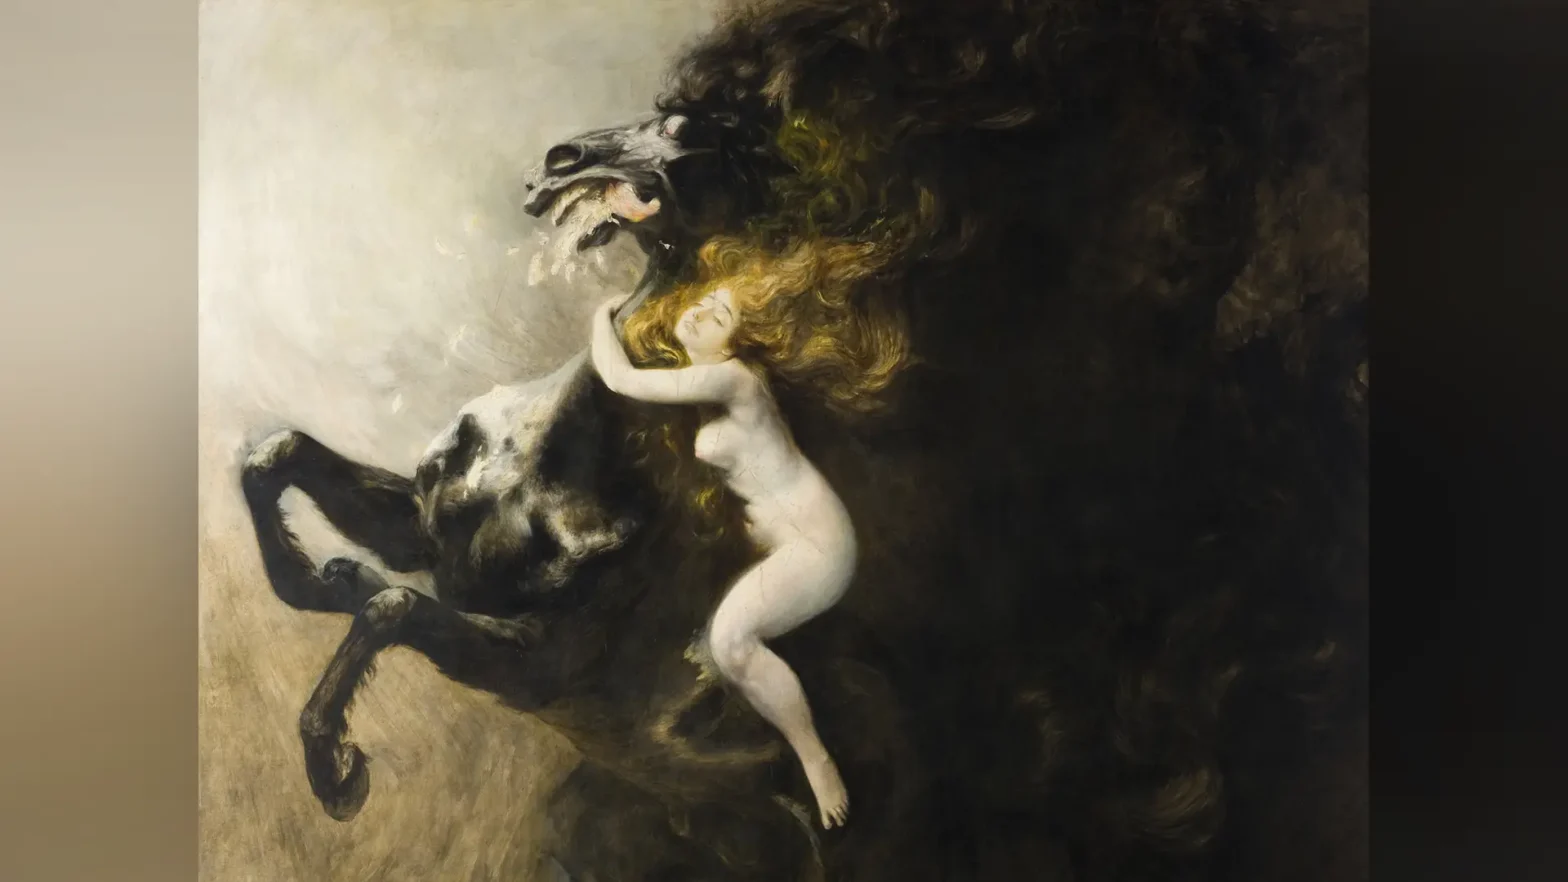 Dzieło przedstawia nagą, młodą kobietę na grzbiecie potężnego, karego konia stającego dęba. Mimika twarzy bohaterki oraz przymknięte oczy wyrażają ekstazę, a rudozłote włosy falują wokół jej głowy, splatając się z końską grzywą.